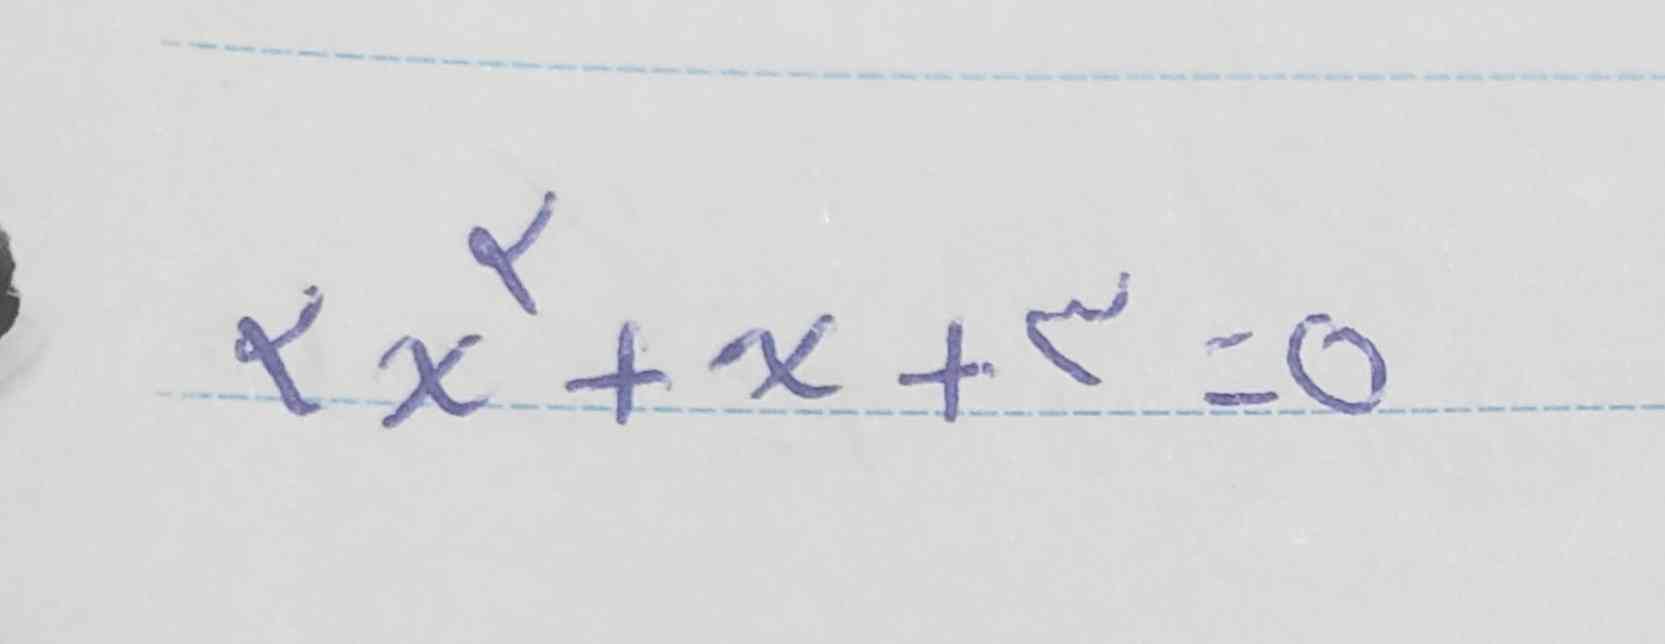 لطفا این معادله رو به روش مربع کامل حل کنید